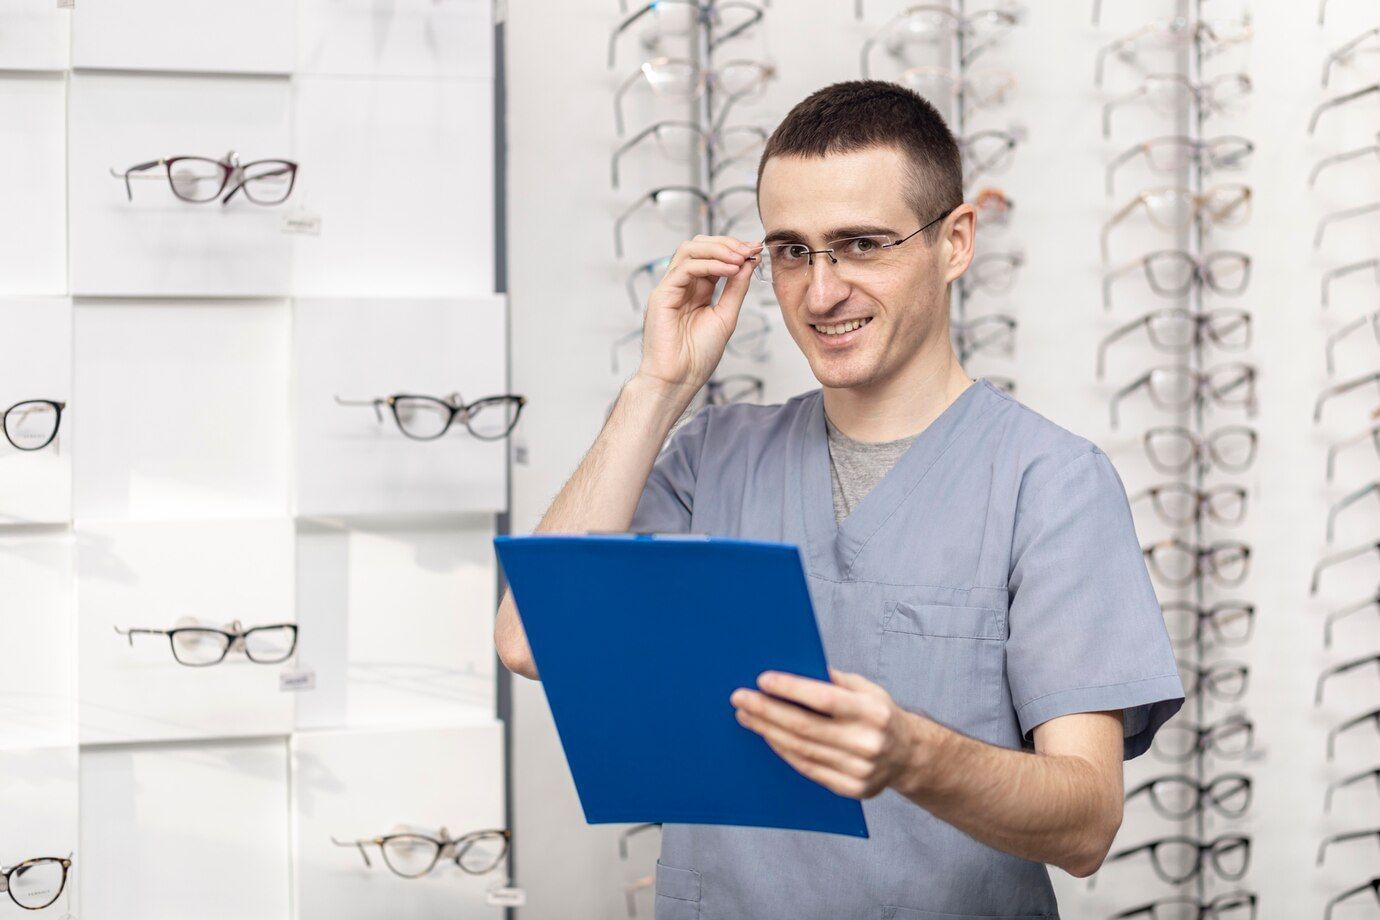 Consultor óptico, homem, branco, com roupa de atendimento numa clínica óptica segurando uma prancheta